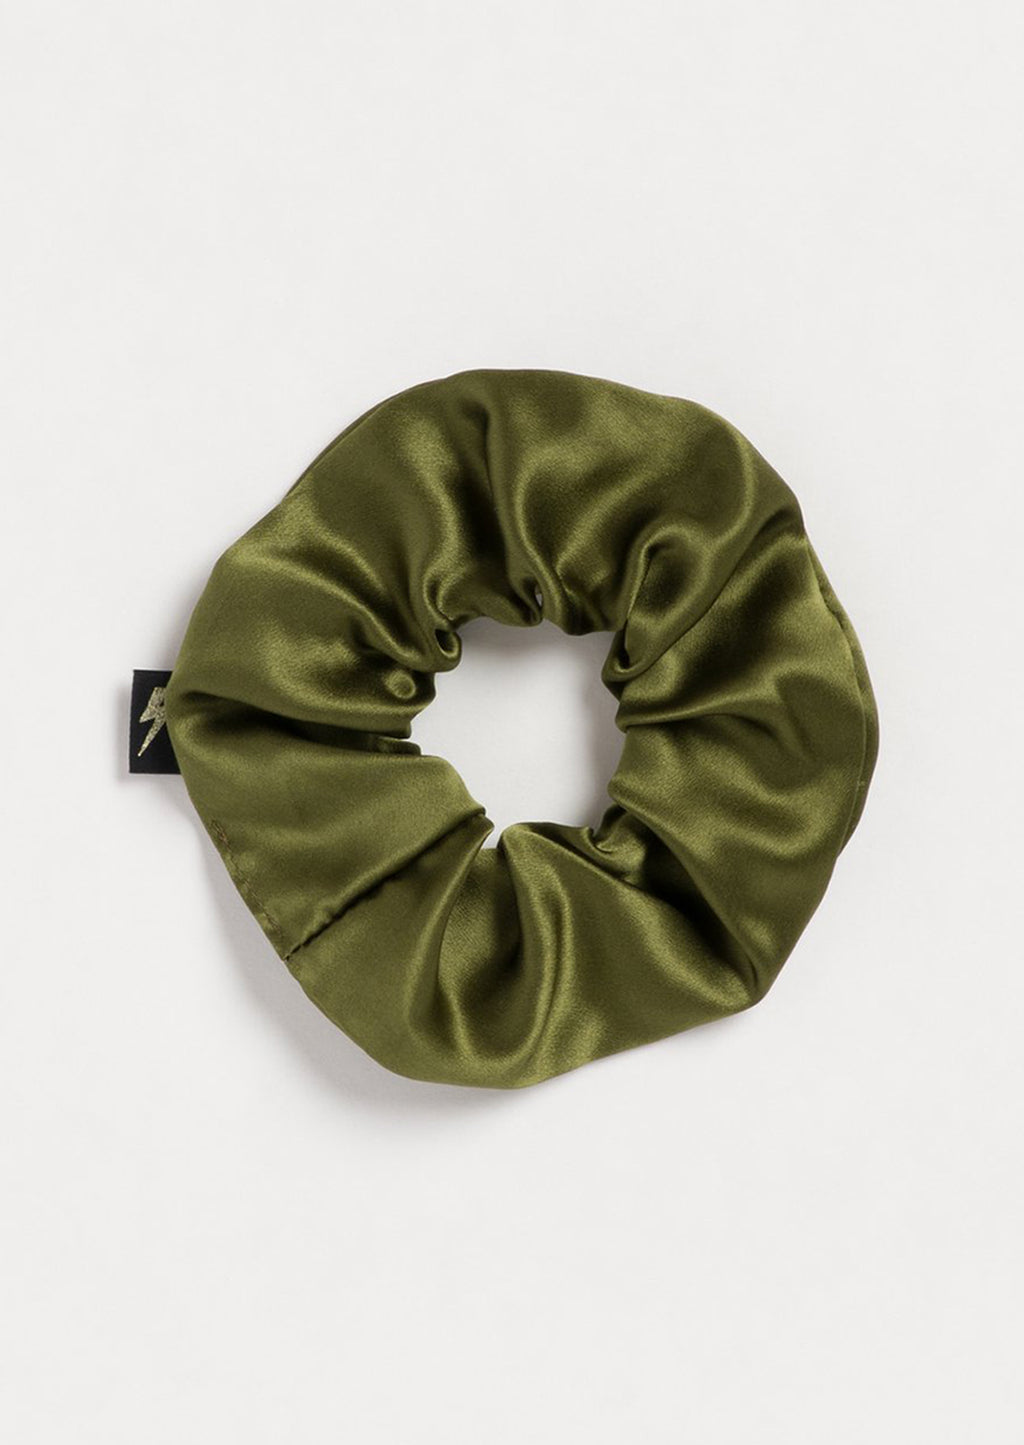 Army: A silk scrunchie in army green with lightning bolt logo tag.